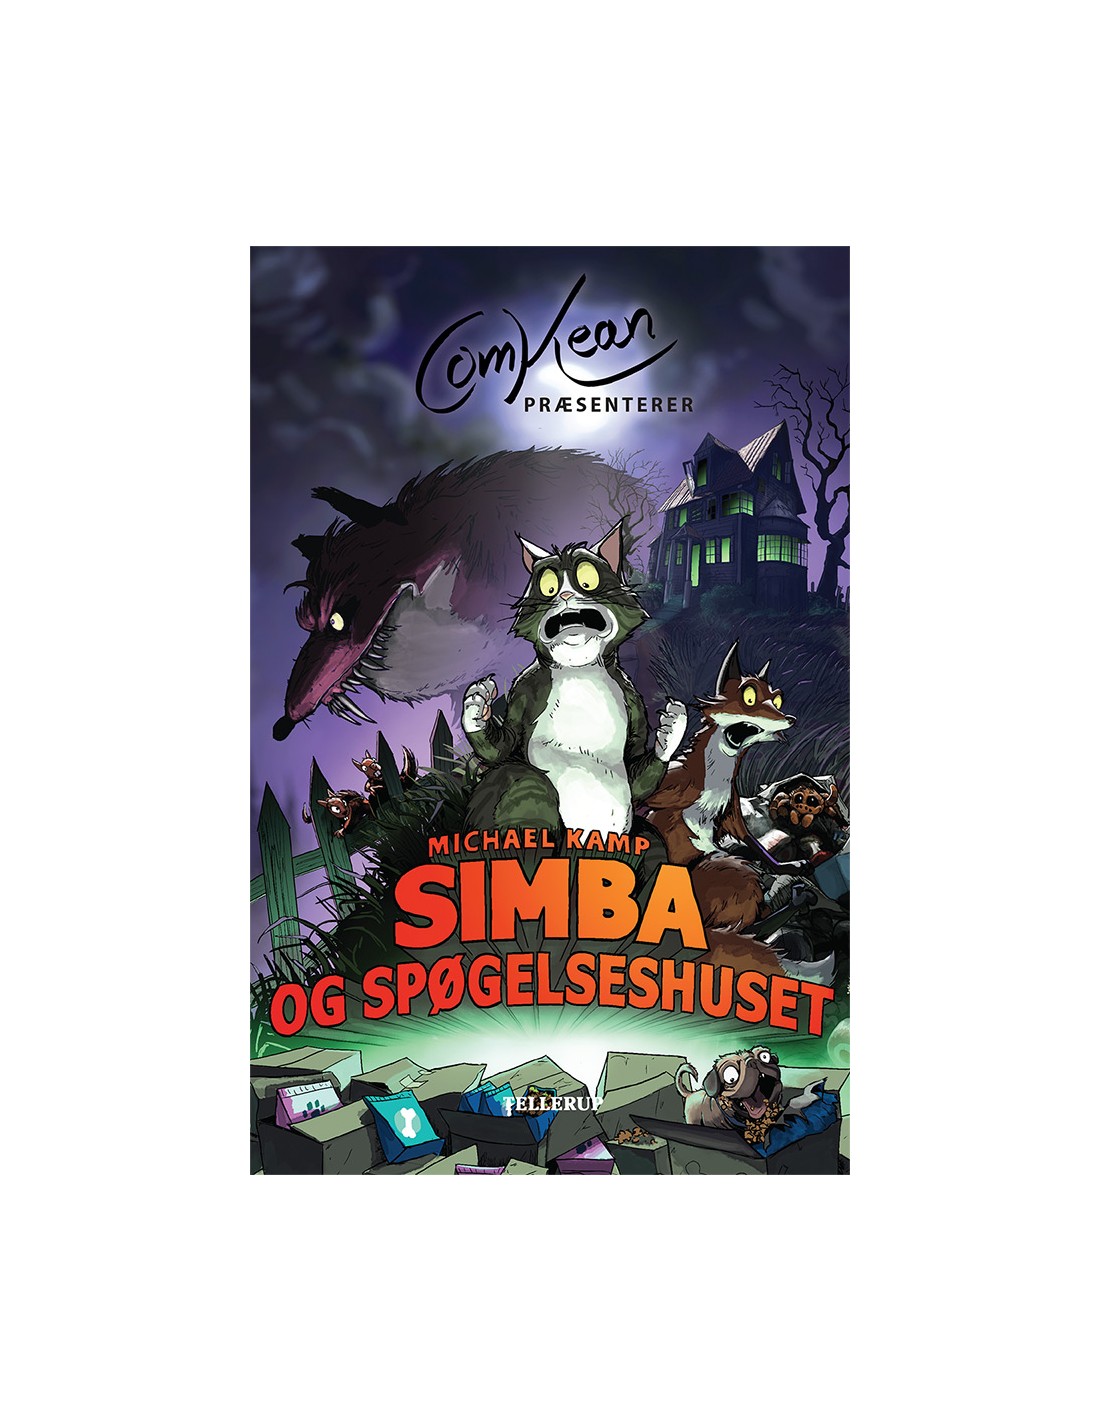 ComKean præsenterer - Simba spøgelseshuset - ISBN 9788758842462 af Kamp